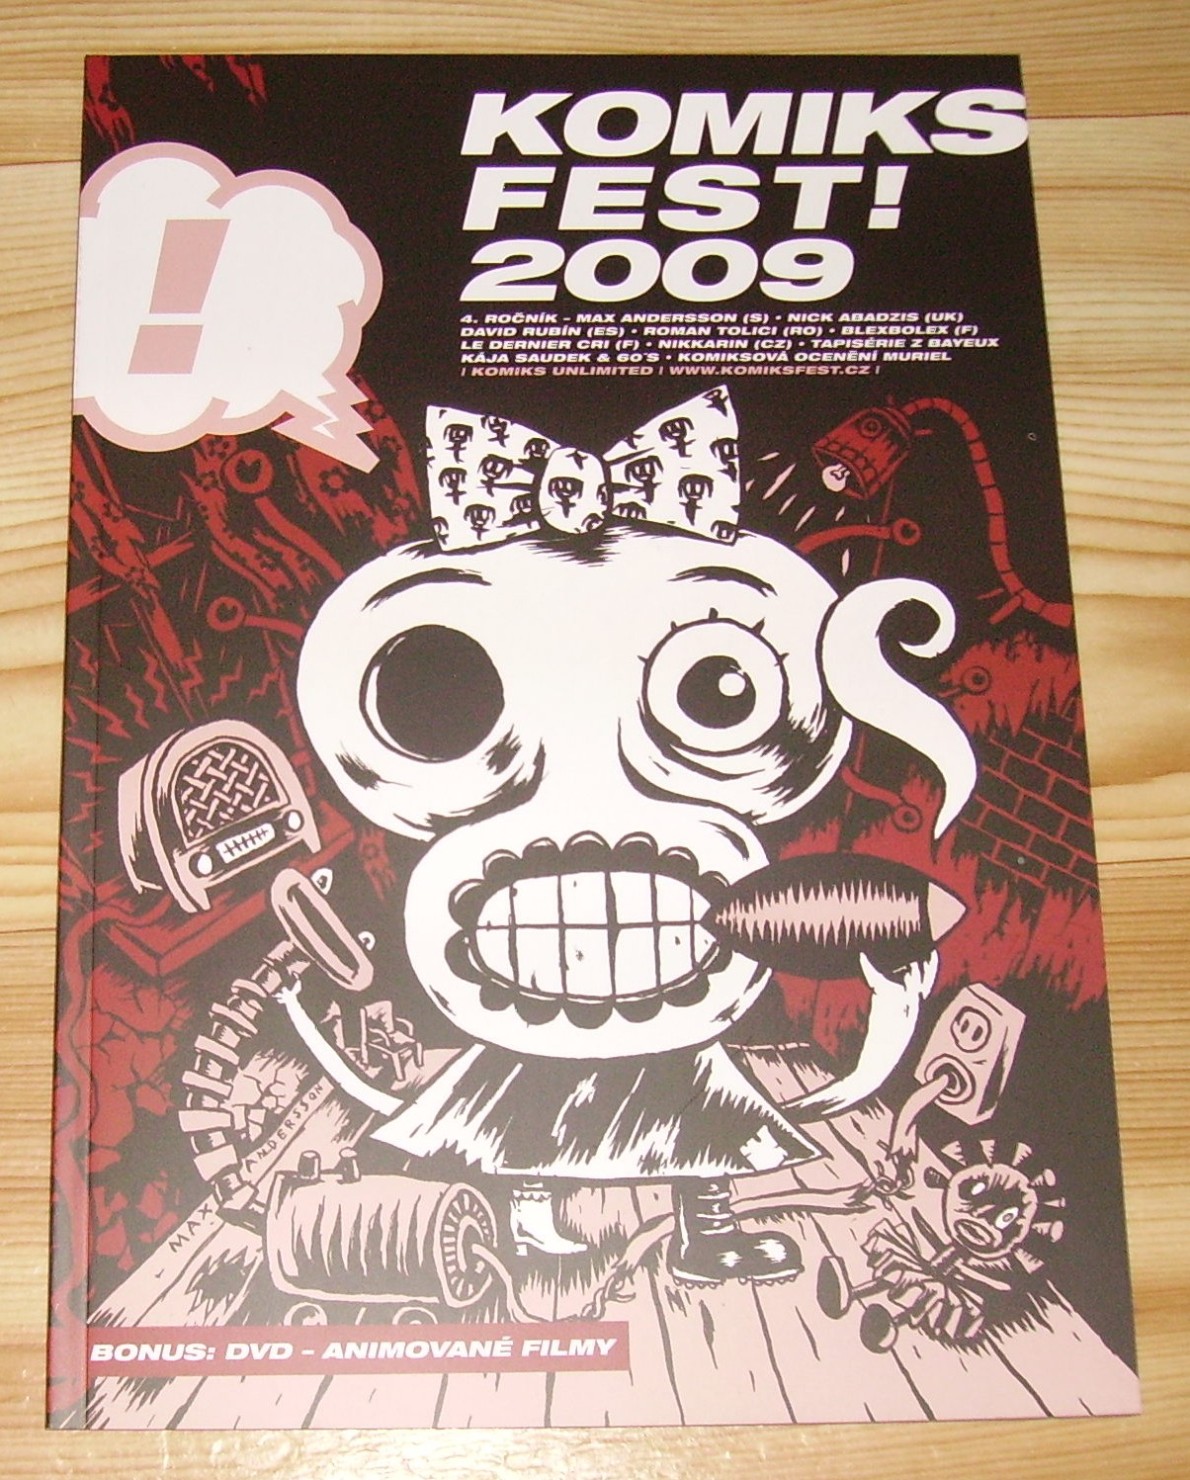 Komiksfest! 2009